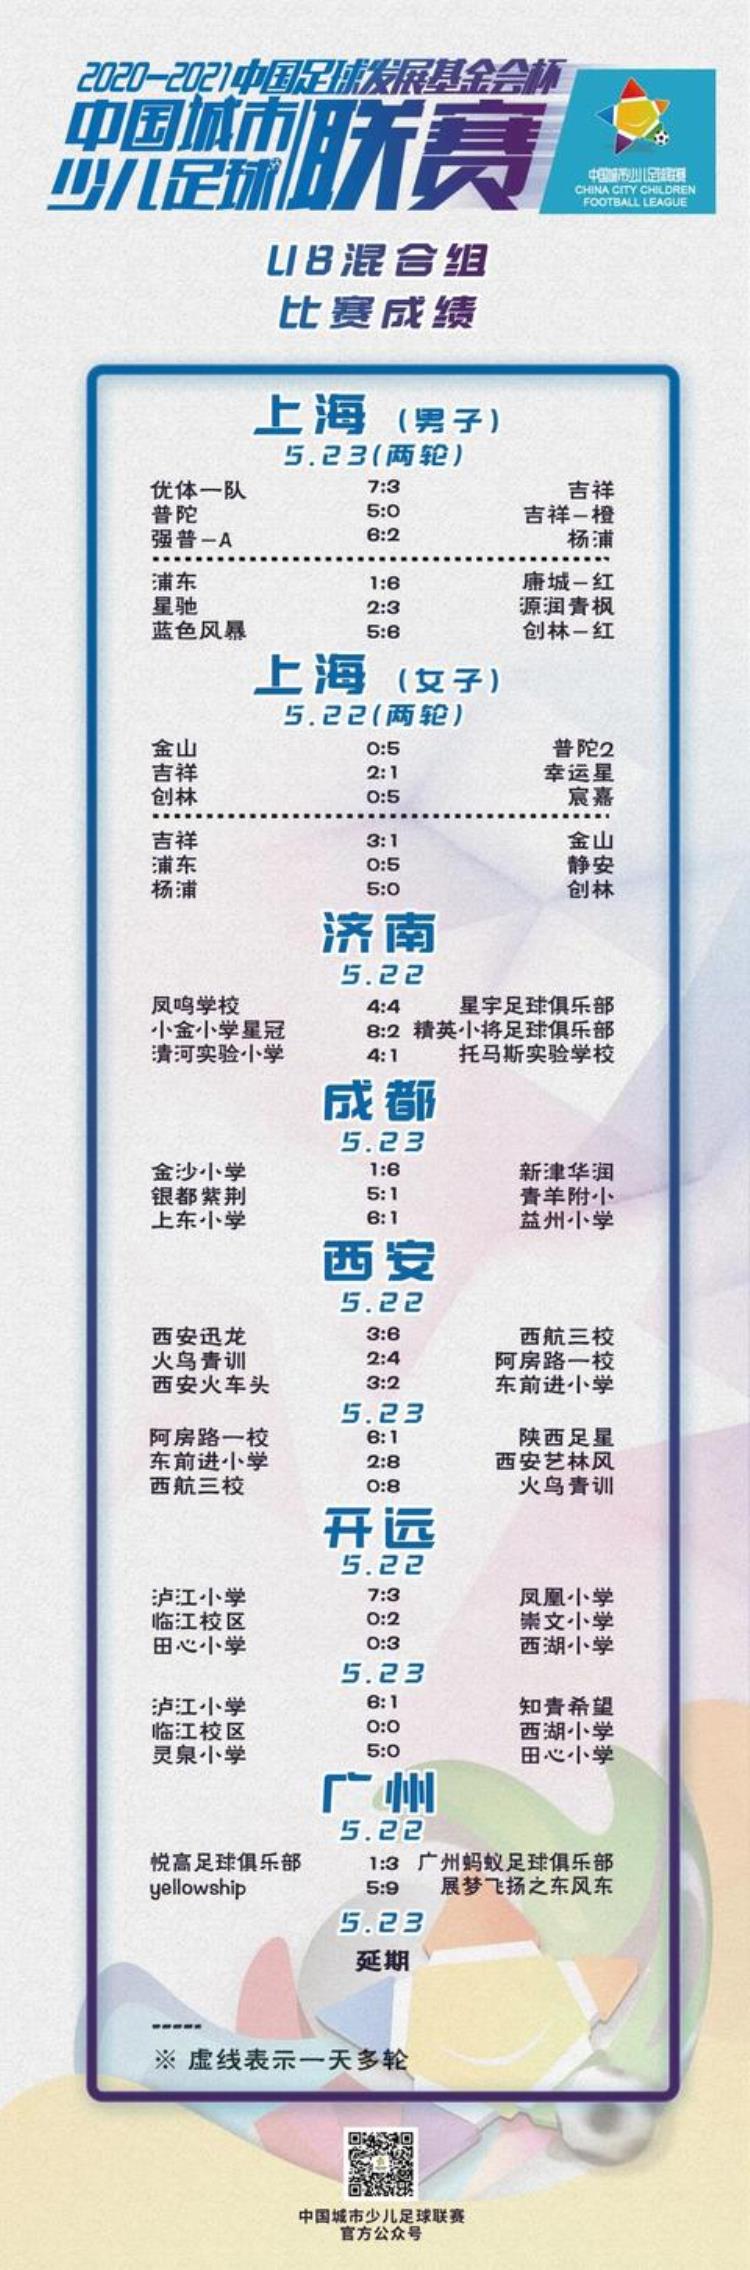 成绩公示部分丨20202021中国足球发展基金会杯中国城市少儿足球联赛成绩公示(截至5月25日)